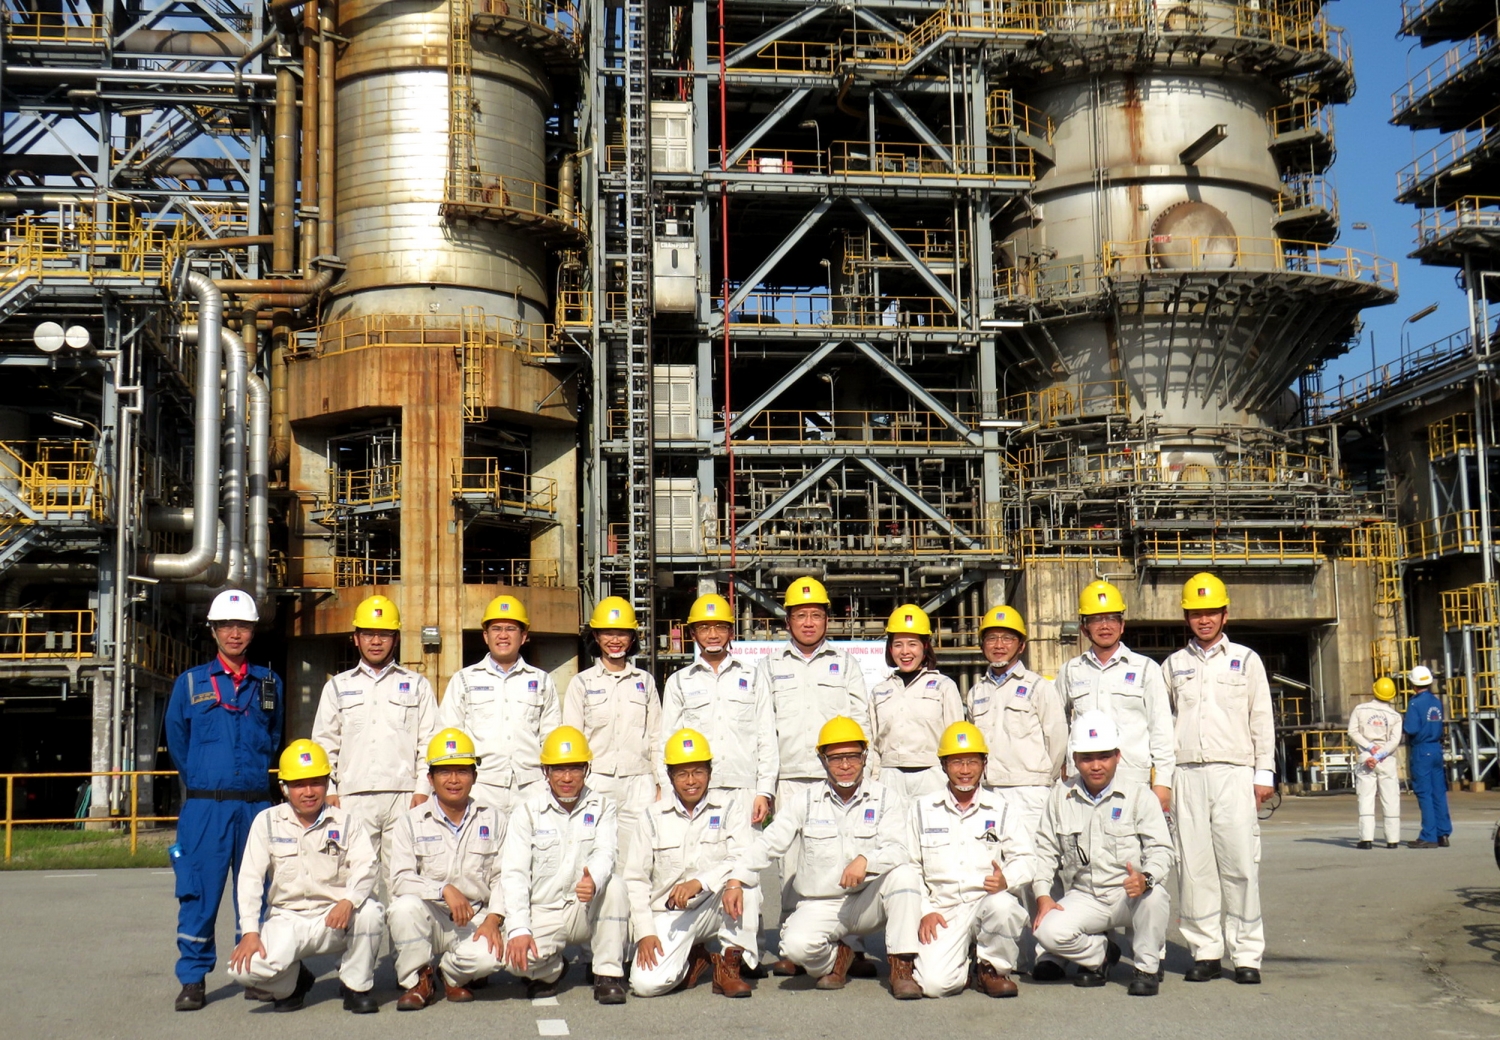 Các đại biểu của Hội thảo tham gia thực tế tại Nhà máy lọc dầu Dung Quất để hiểu hơn về quy trình công nghệ và công tác vận hành, bảo dưỡng sửa chữa tại nhà máy.